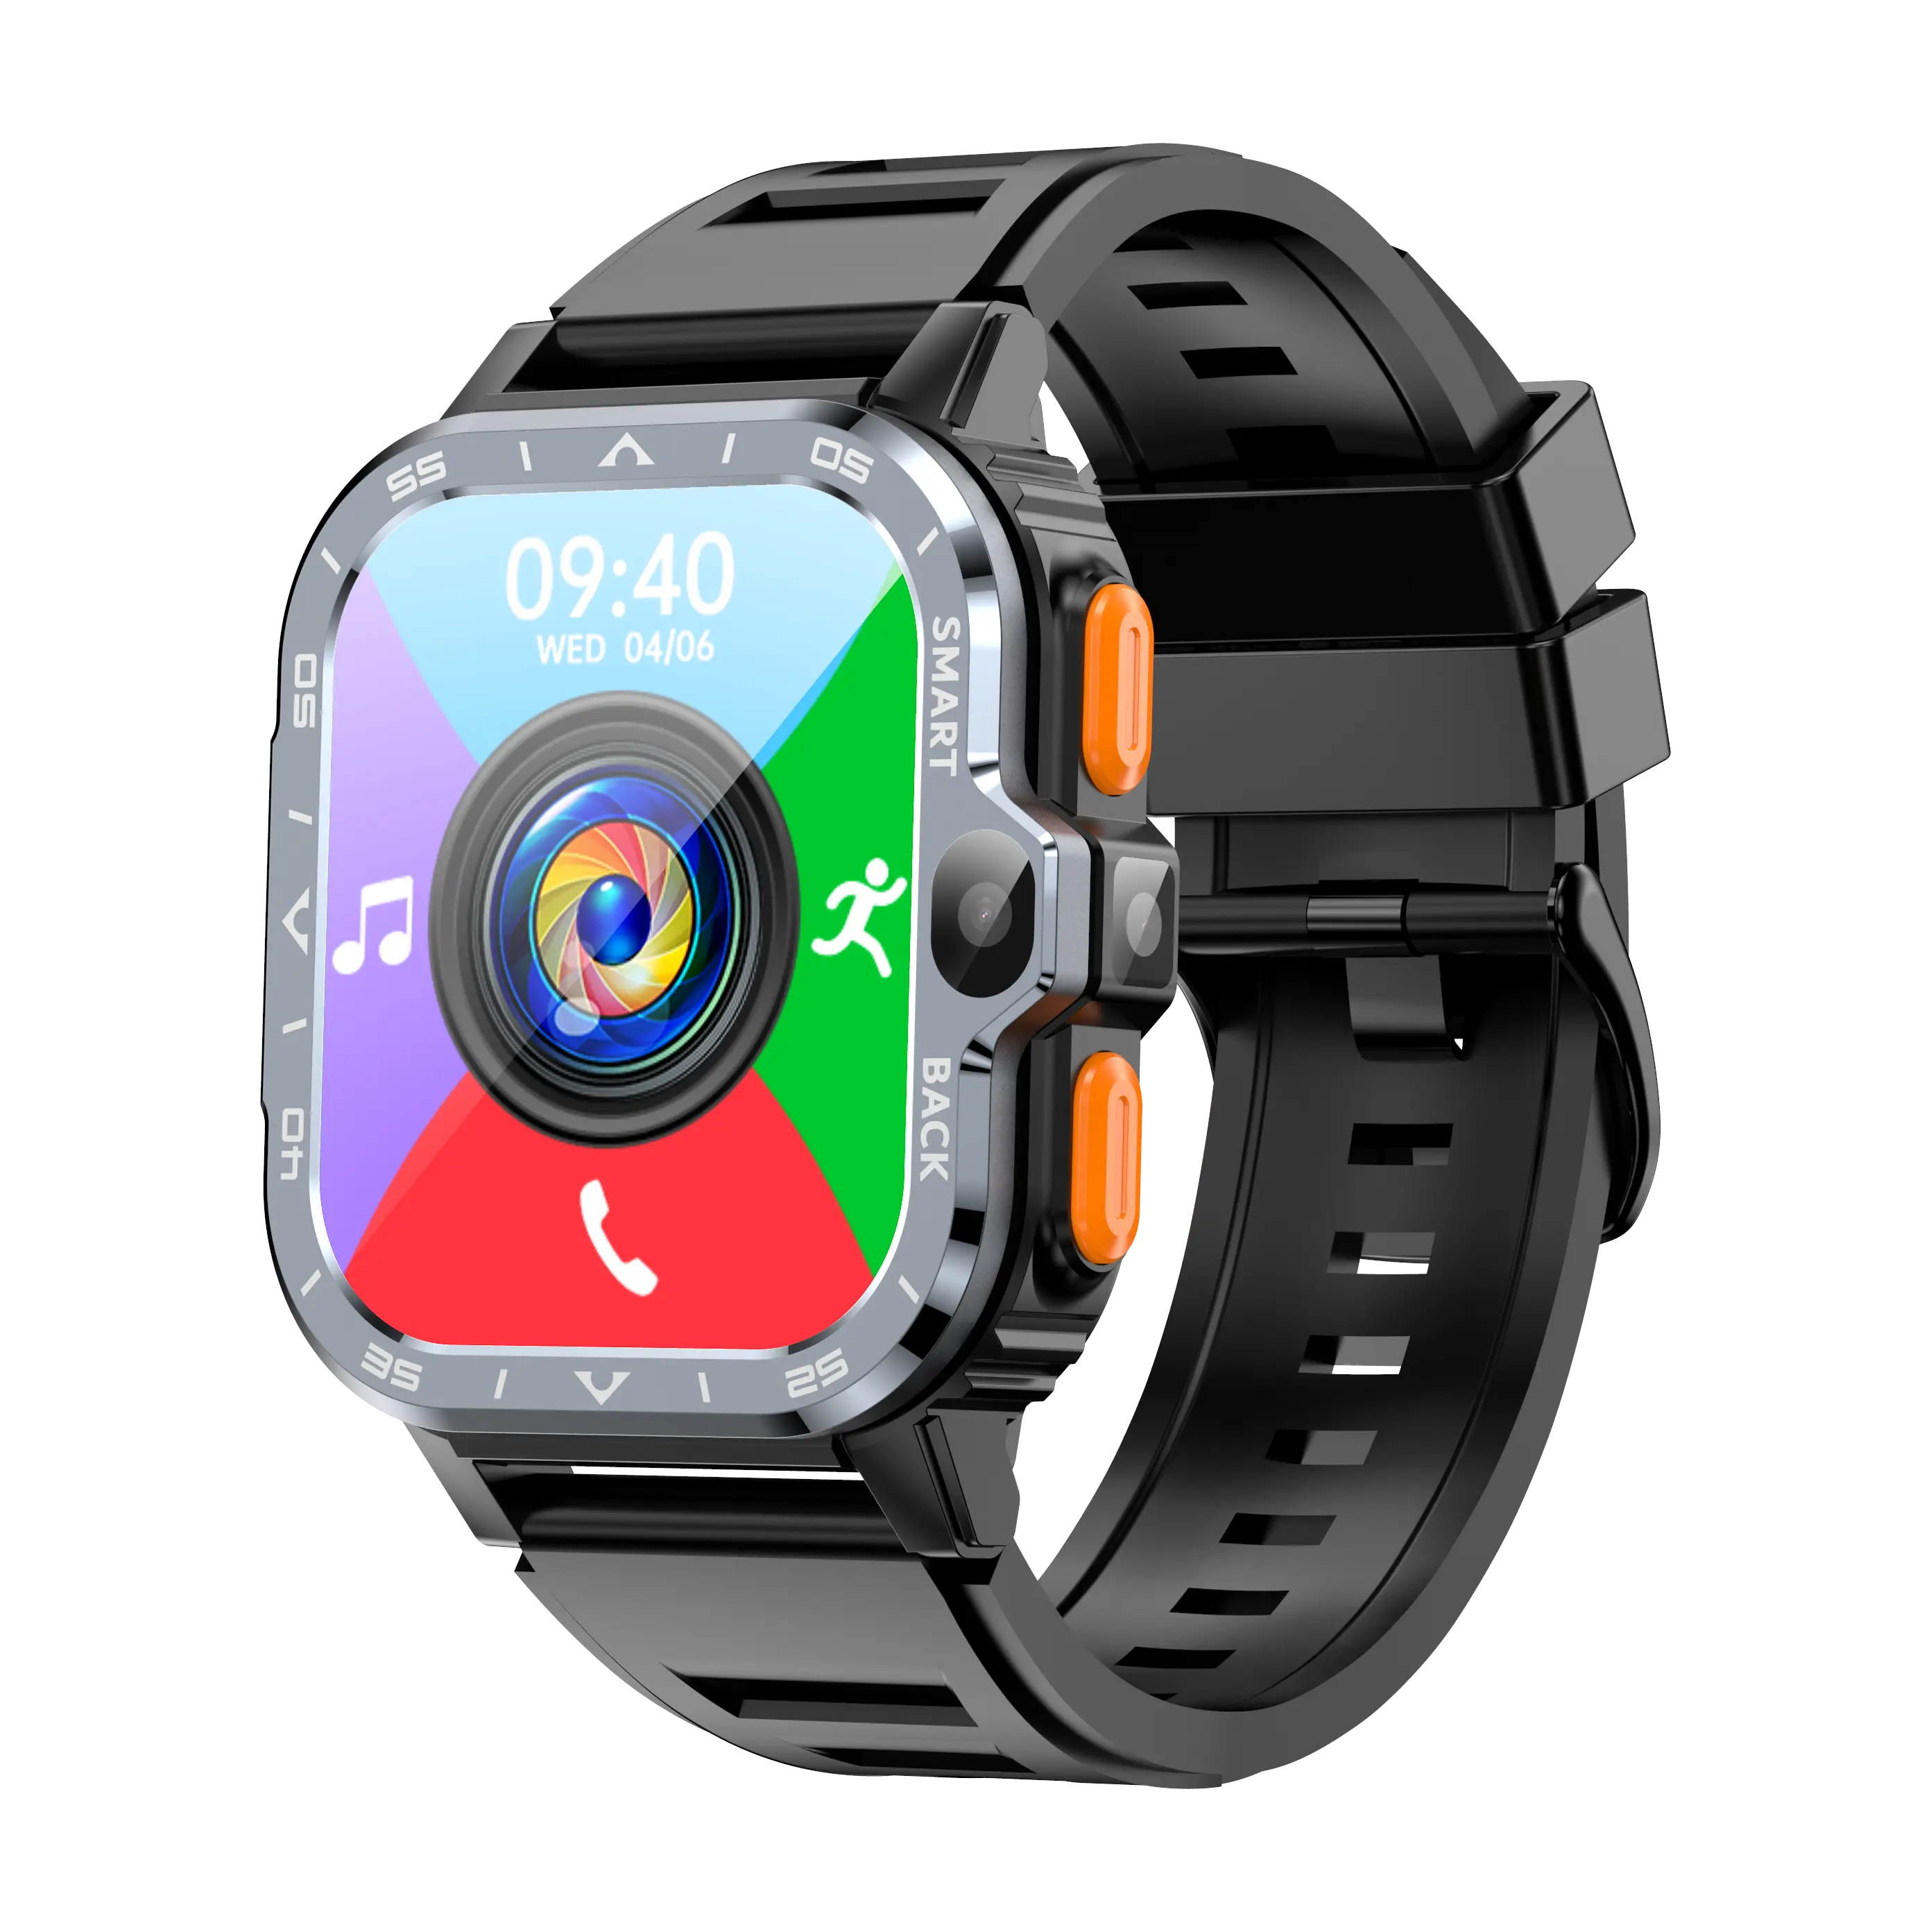 4G Nieuwste Topkwaliteit 2G + 16G Mobiele Telefoon Smart Watch Android Touchscreen Smartwatch Met Hartslagmeter Sq333